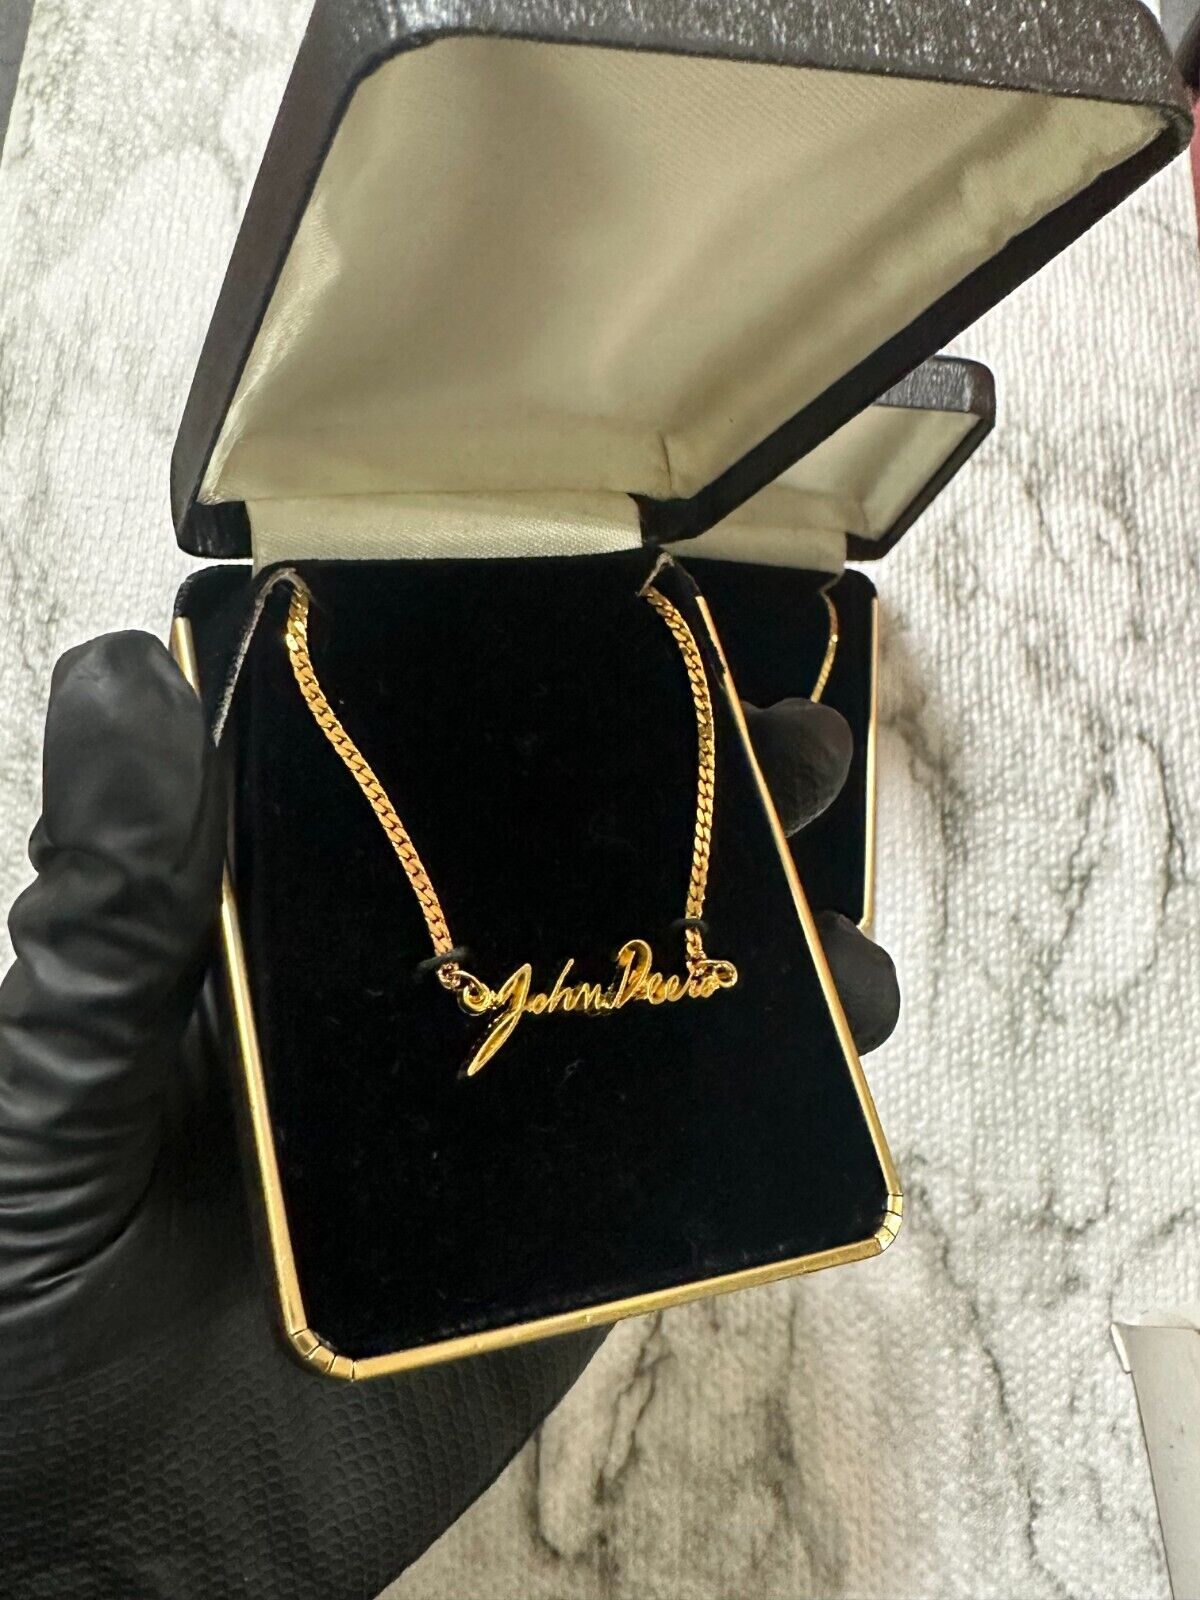 Vintage Gold John Deere Necklace (NEW)